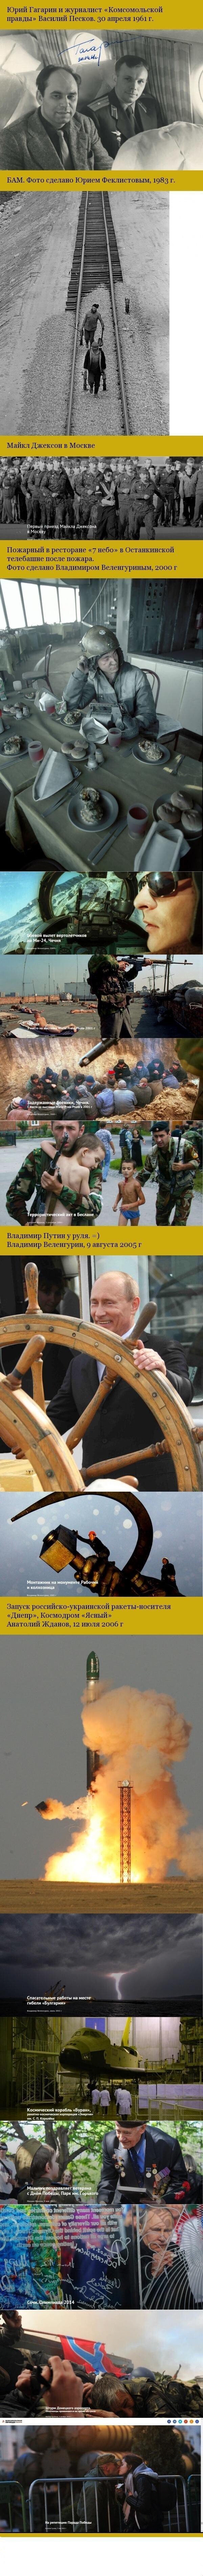 Лучшие фотографии "Комсомольской правды" Некоторые снимки гениальны!